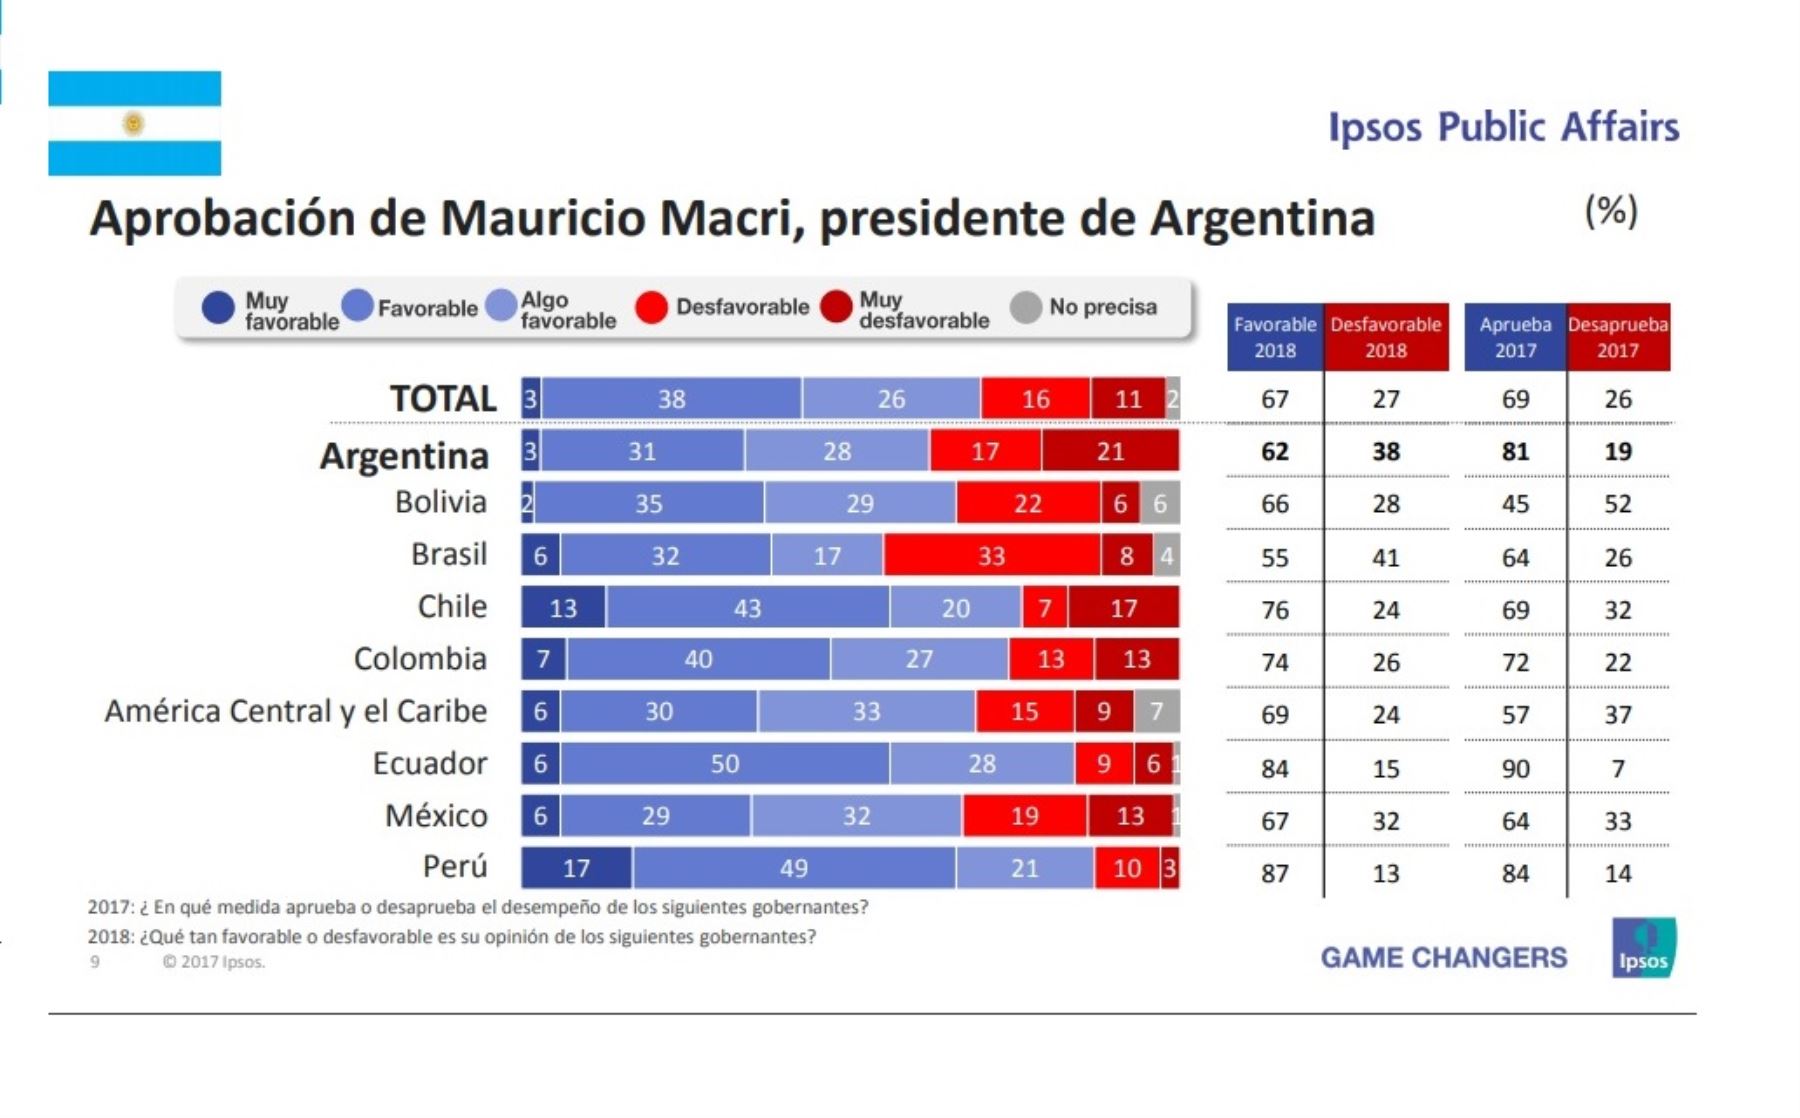 Aprobación del presidente de Argentina, Mauricio  Macri. Encuesta Ipsos Public Affairs 2018.